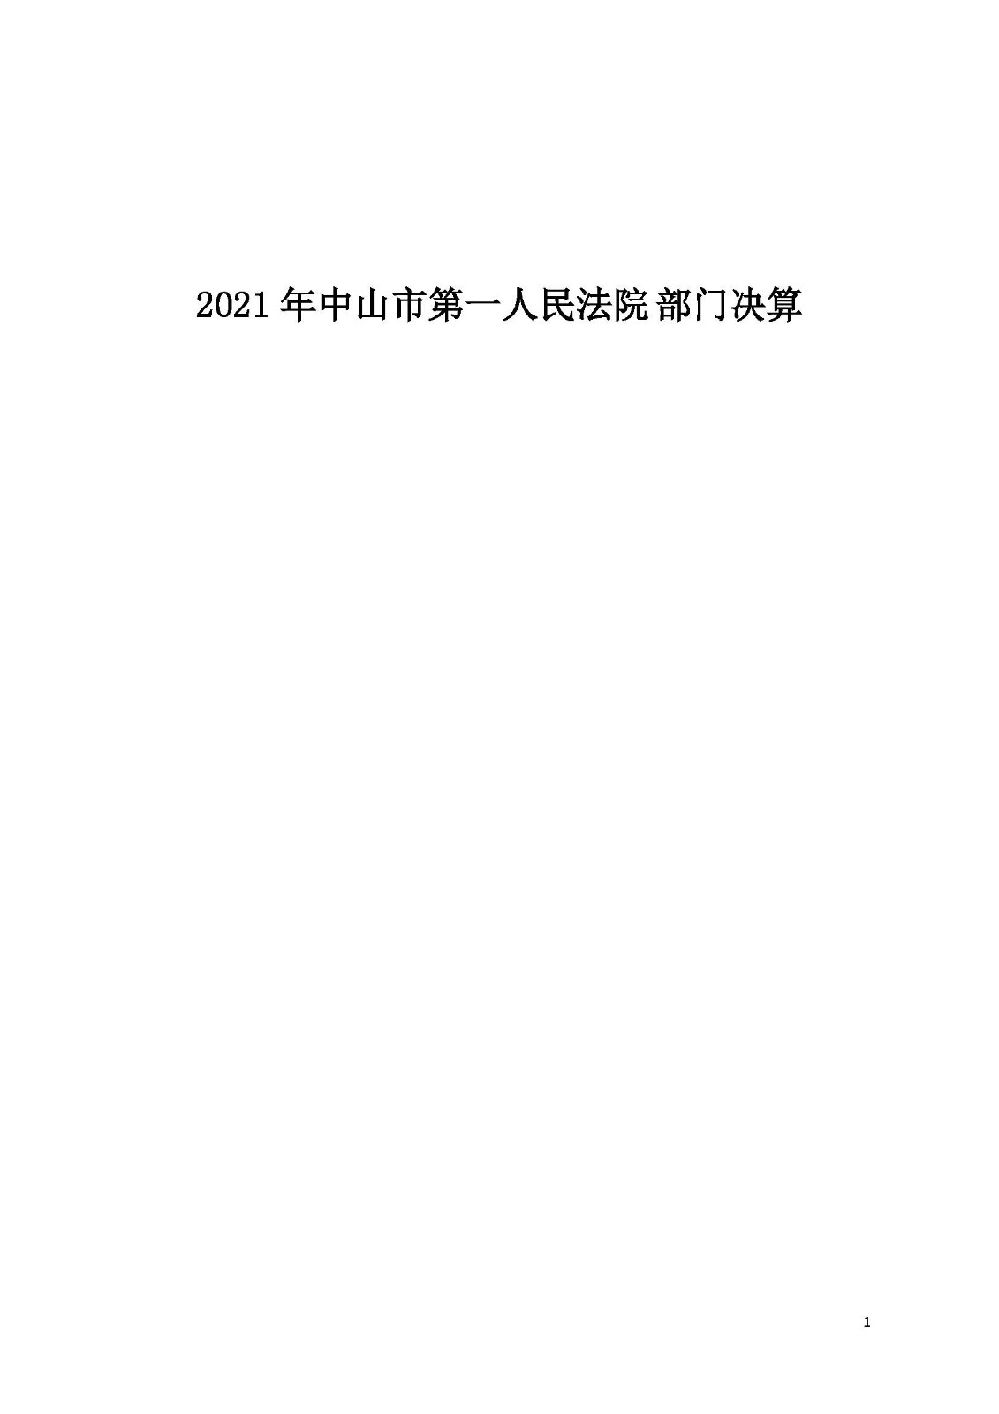 2021年中山市第一人民法院部门决算 _页面_01.jpg